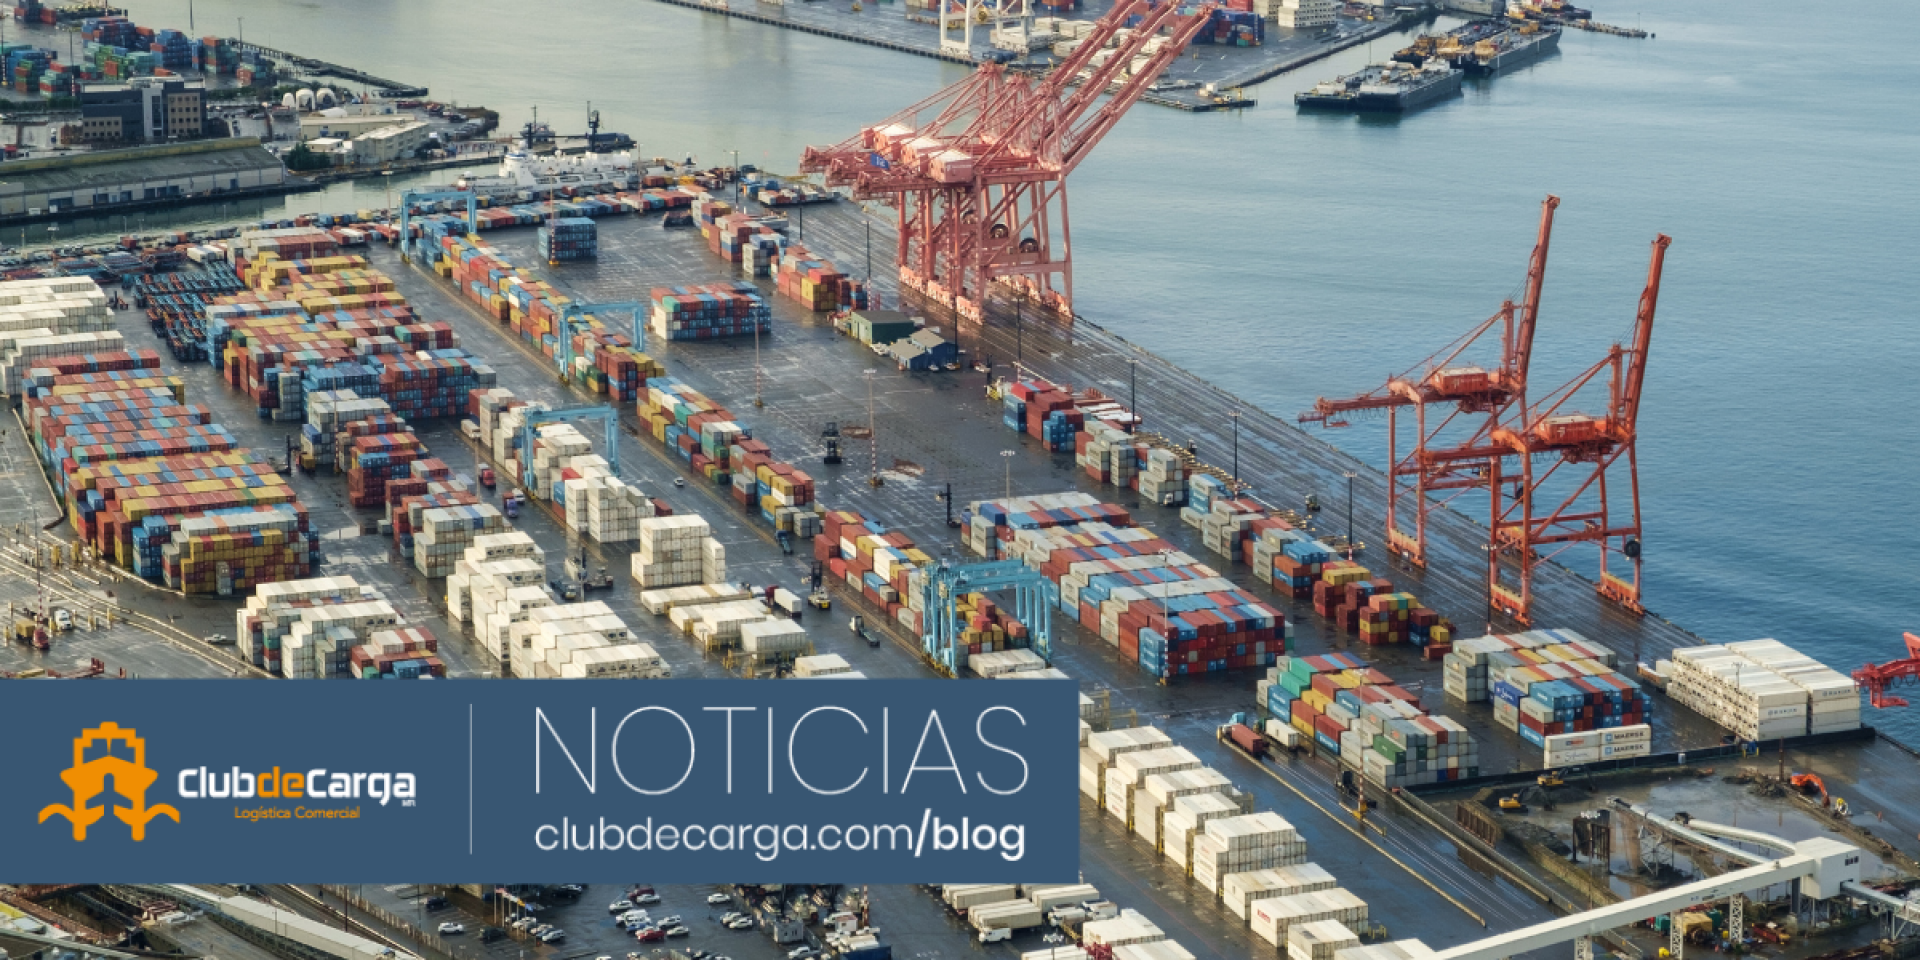 Puerto de Altamira: motor de desarrollo comercial mexicano